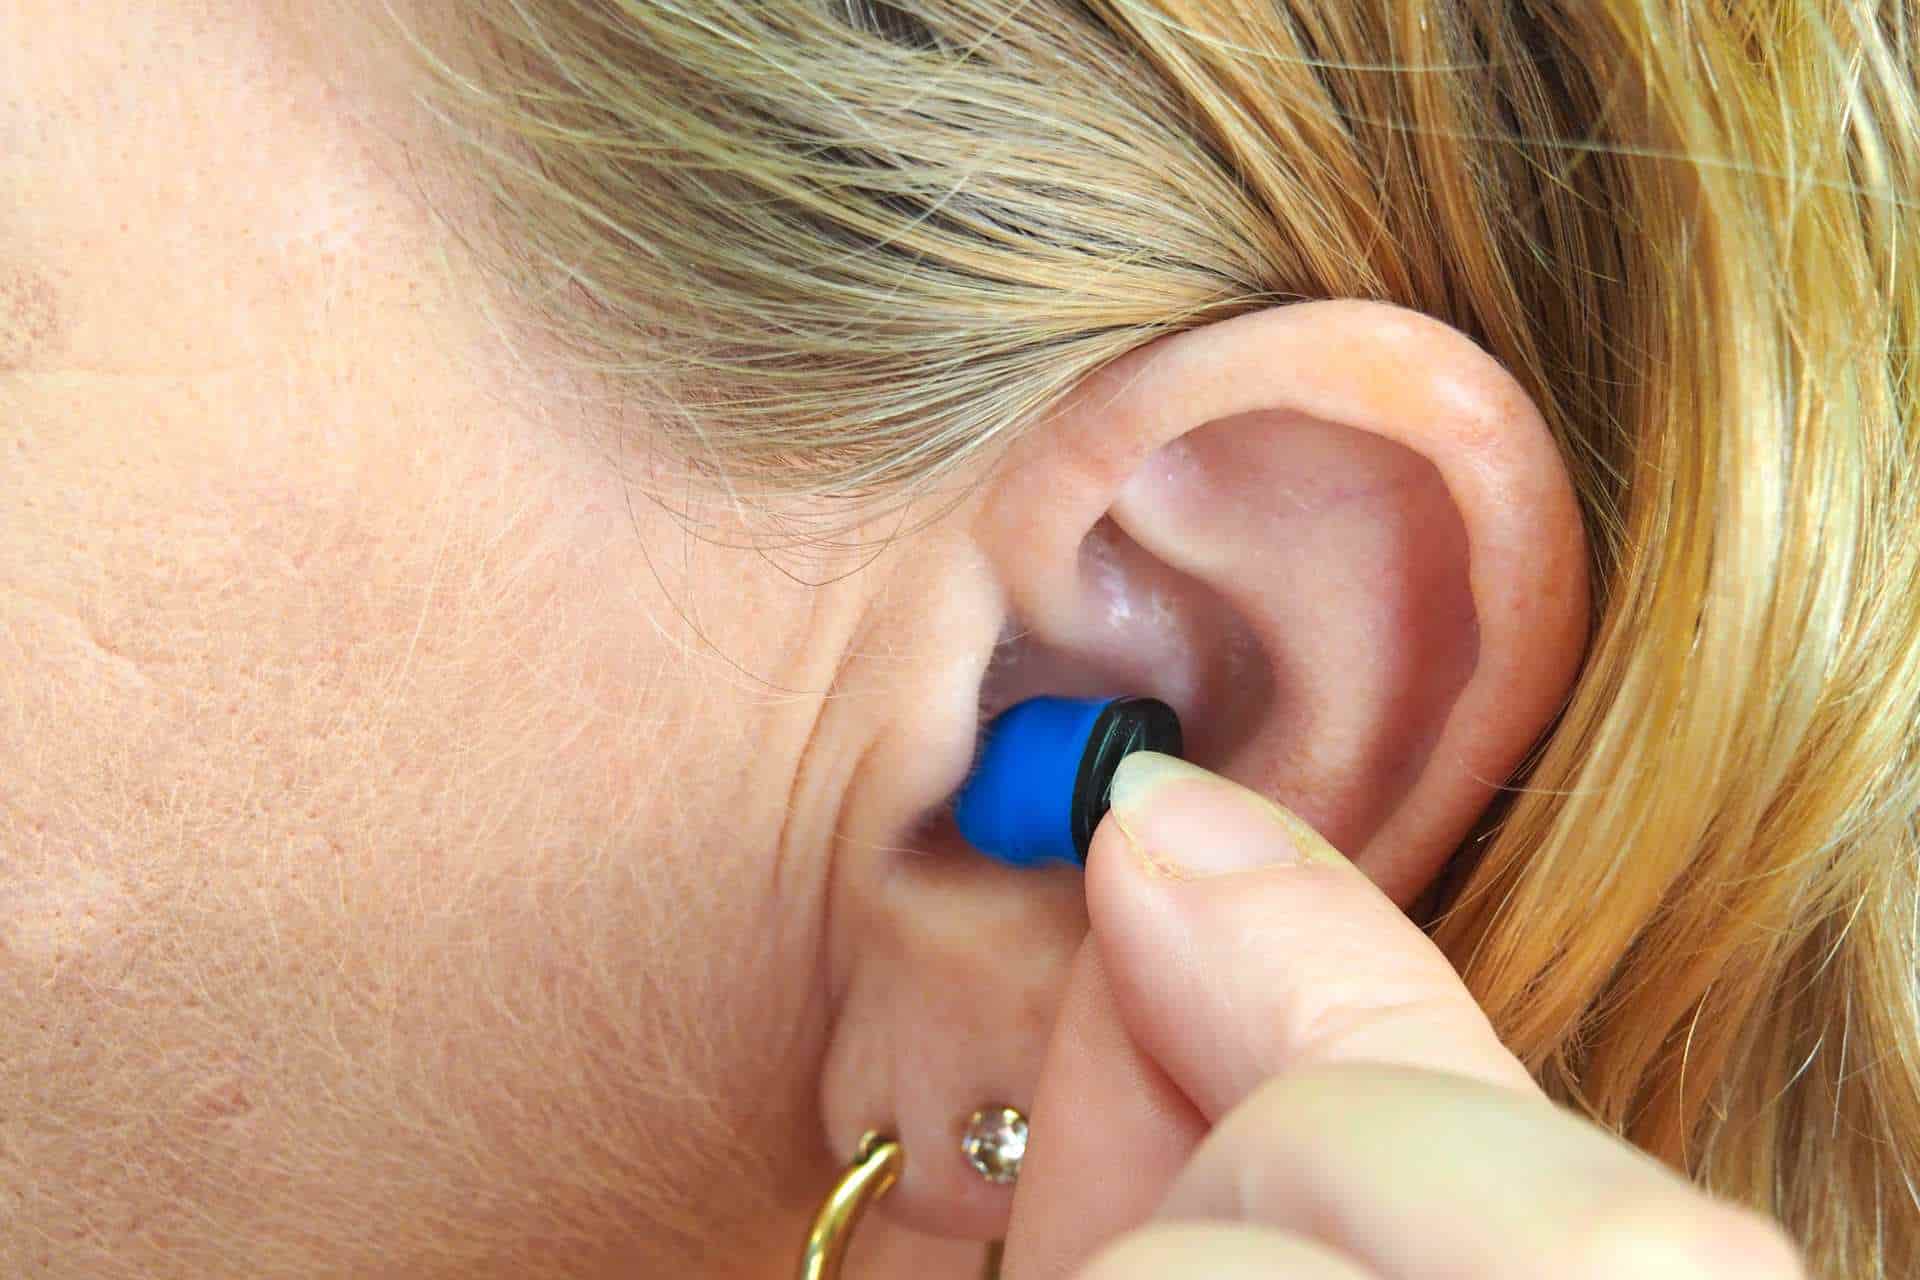 Woman putting earplug into ear.